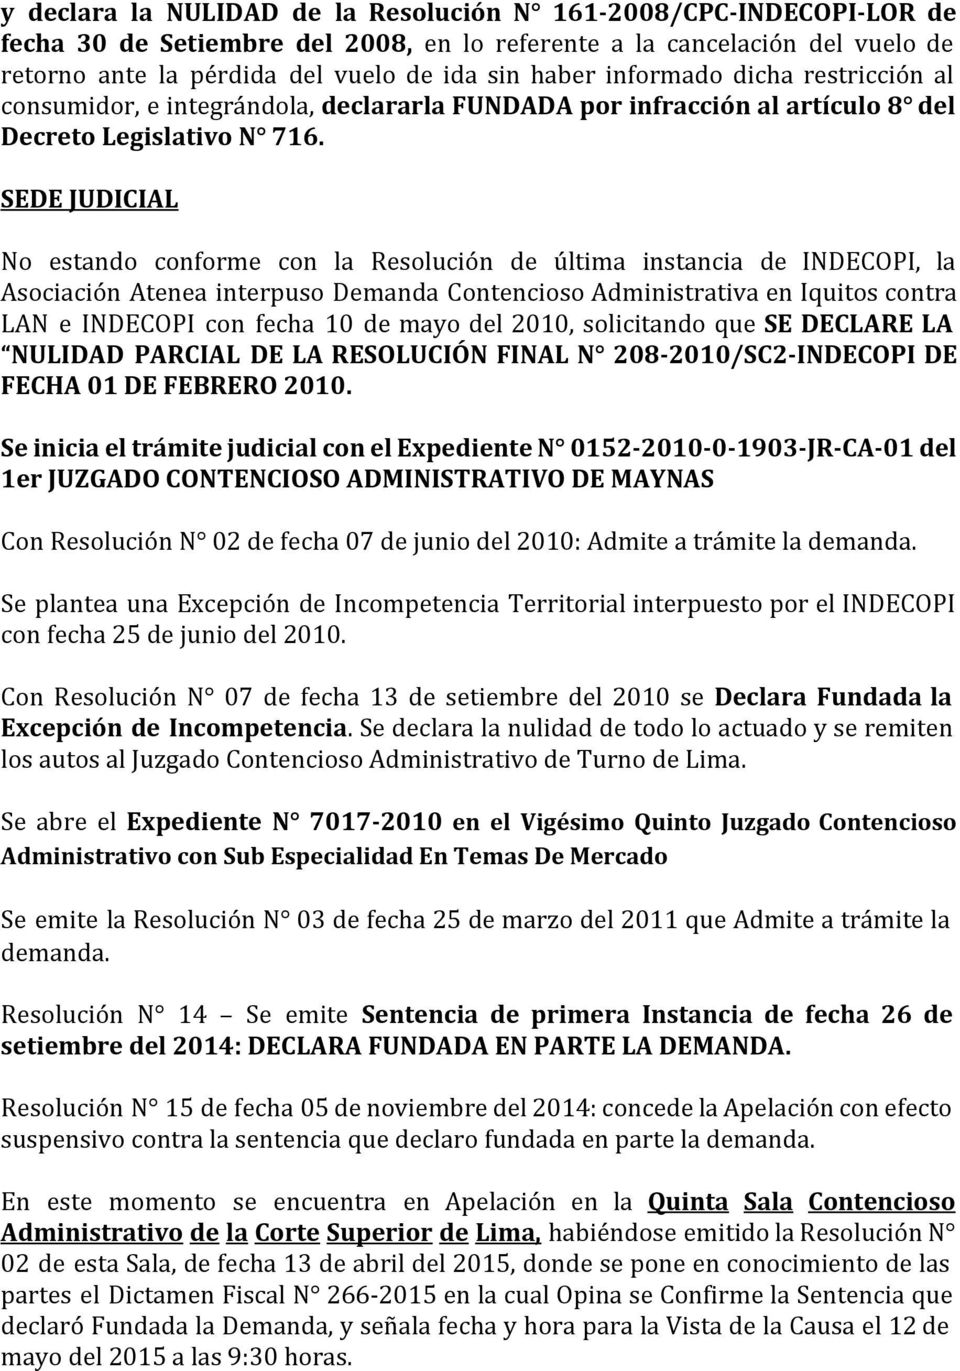 SEDE JUDICIAL No estando conforme con la Resolución de última instancia de INDECOPI, la Asociación Atenea interpuso Demanda Contencioso Administrativa en Iquitos contra LAN e INDECOPI con fecha 10 de